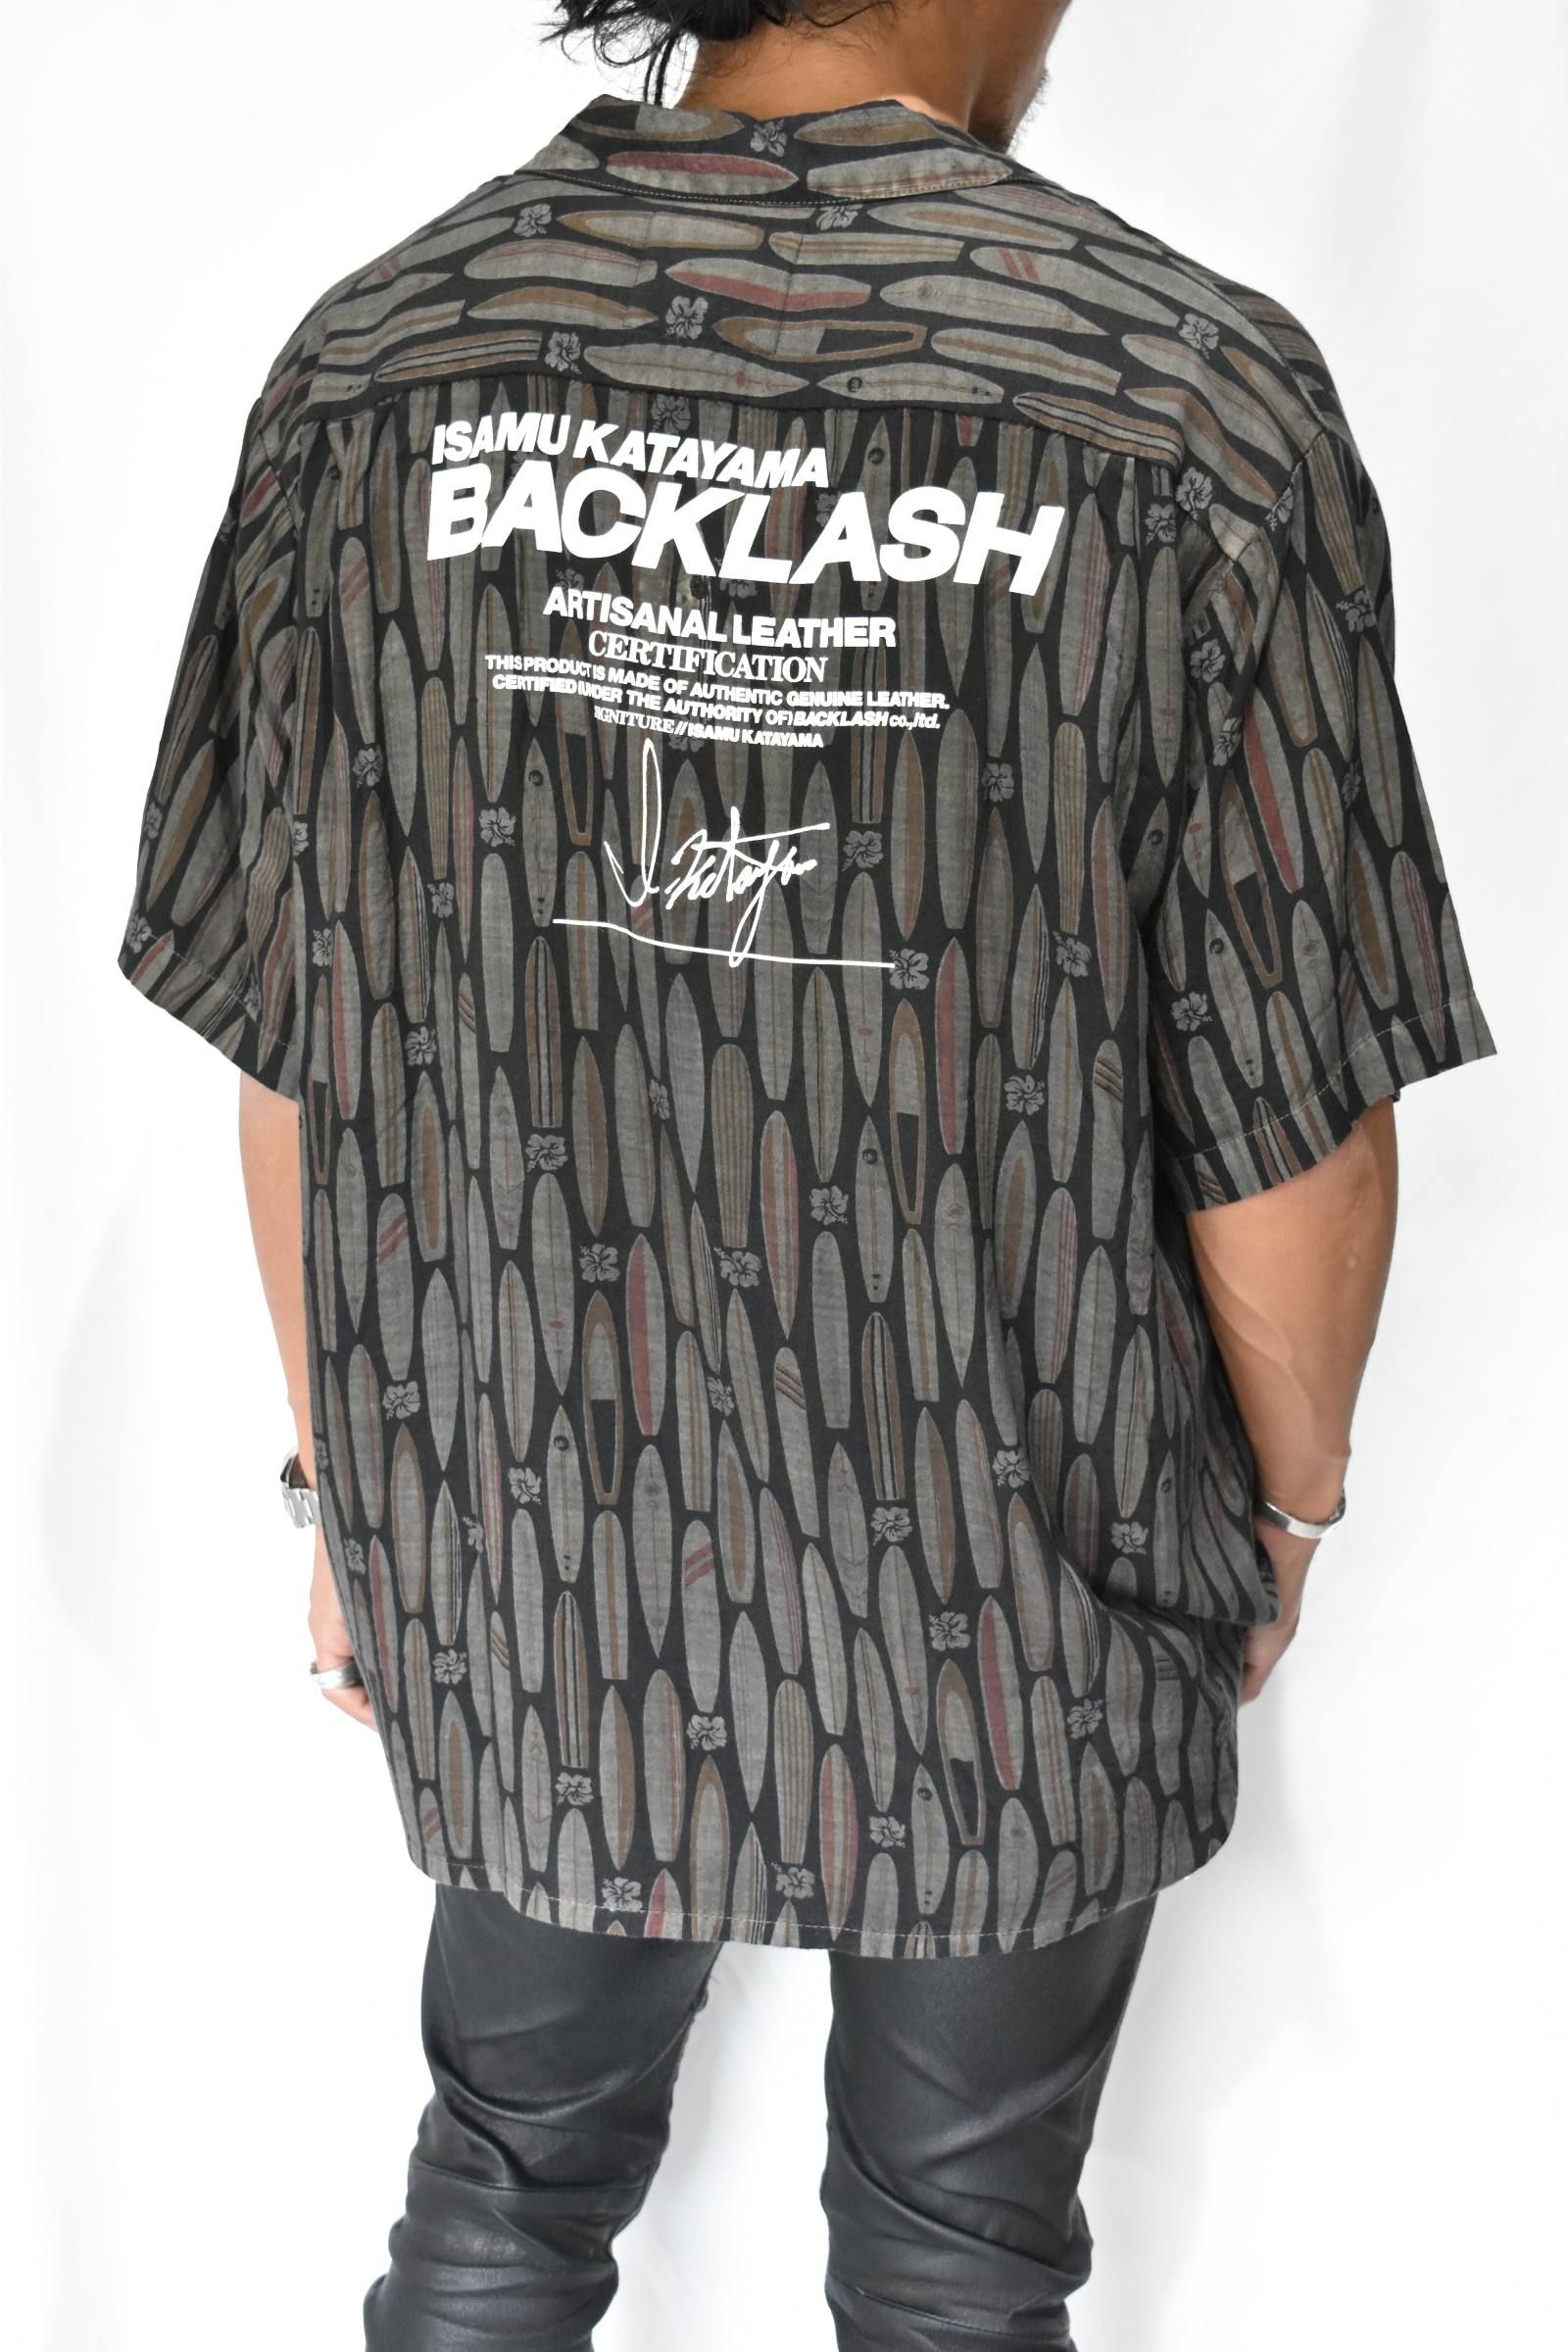 新品!!(定価75900)バックラッシュ BACKLASH・リメイクシャツ